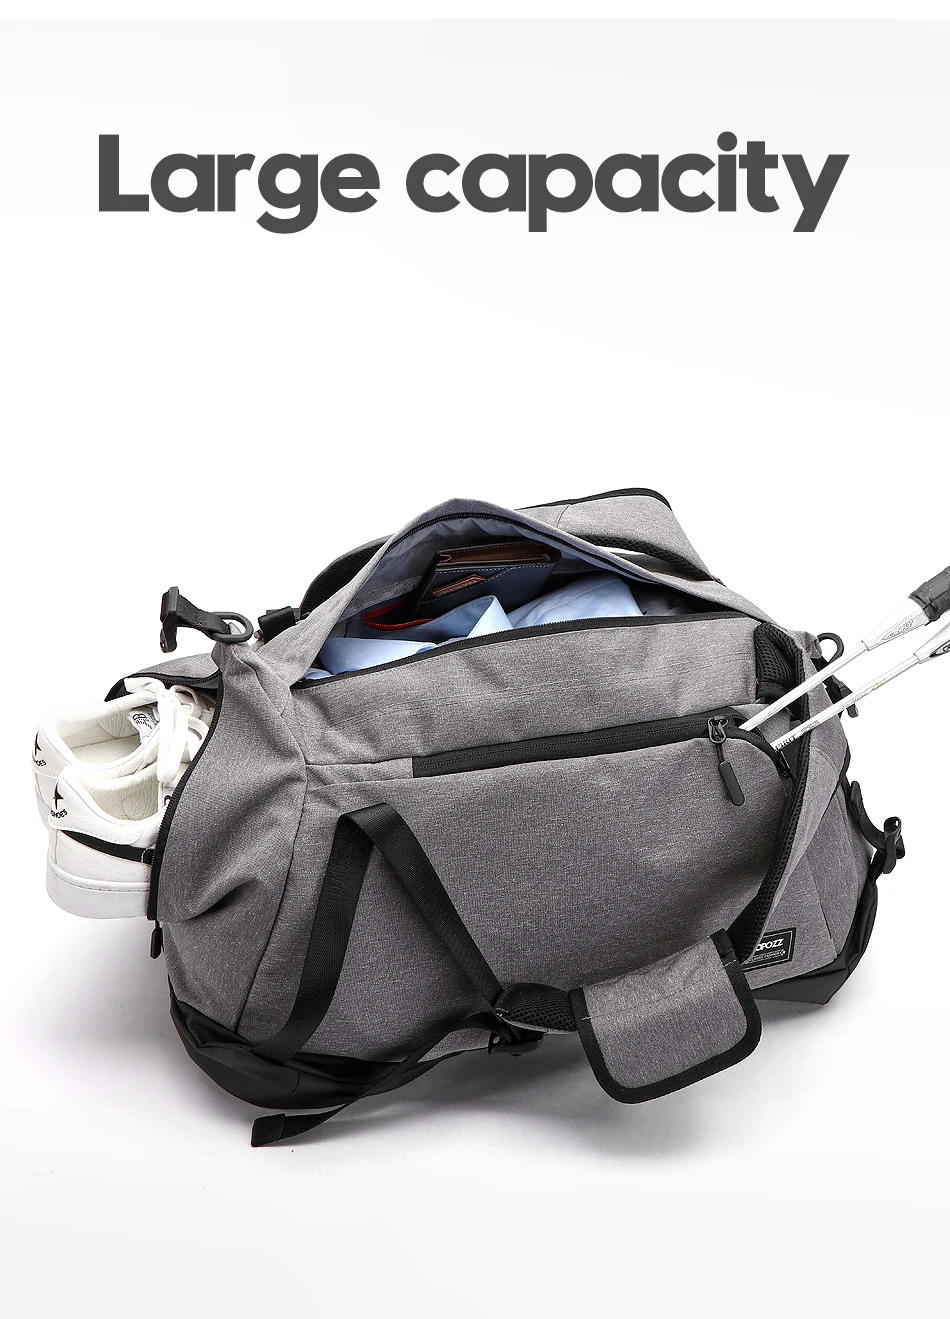 COPOZZ водостойкая сумка для спортзала спортивная мужская женская для хранения обуви фитнес йога коврик тренировочная сумка на одно плечо сумка через плечо Tas